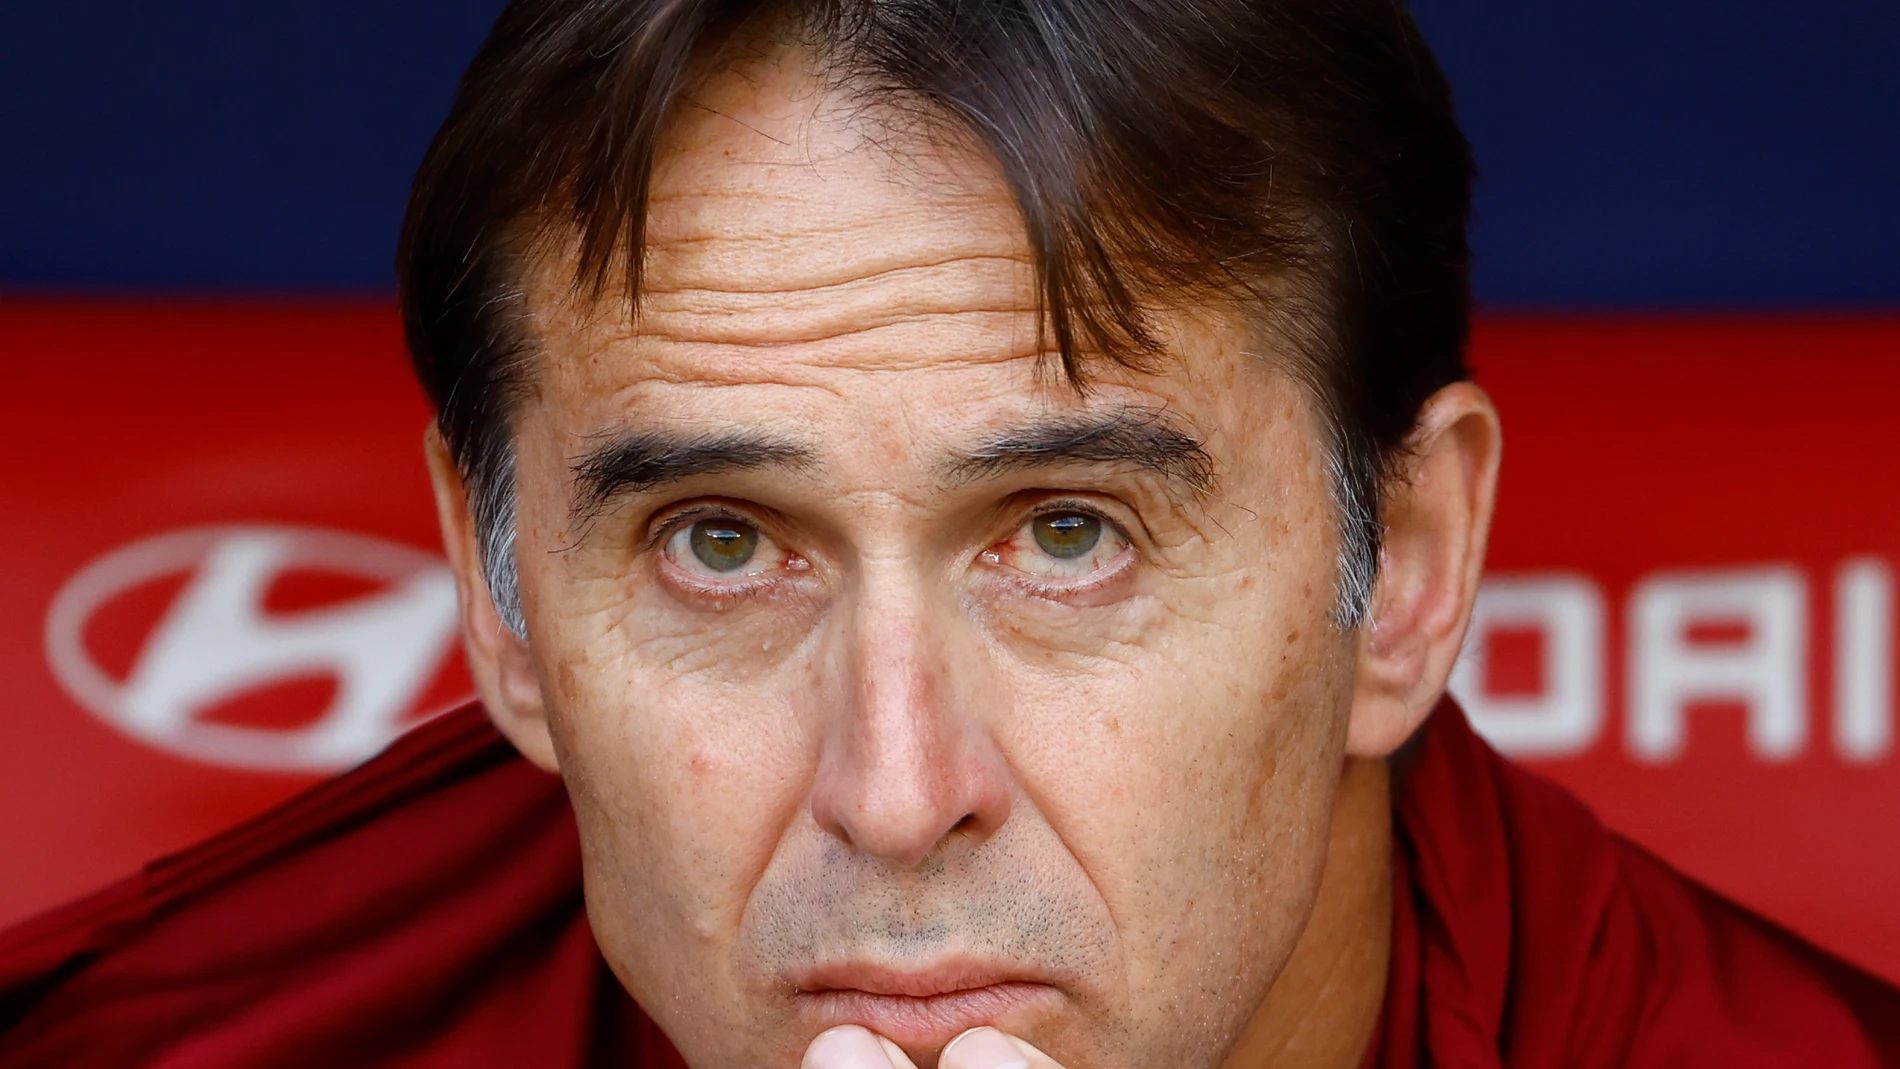 El entrenador del Sevilla CF, Julen Lopetegui, está siendo muy discutido